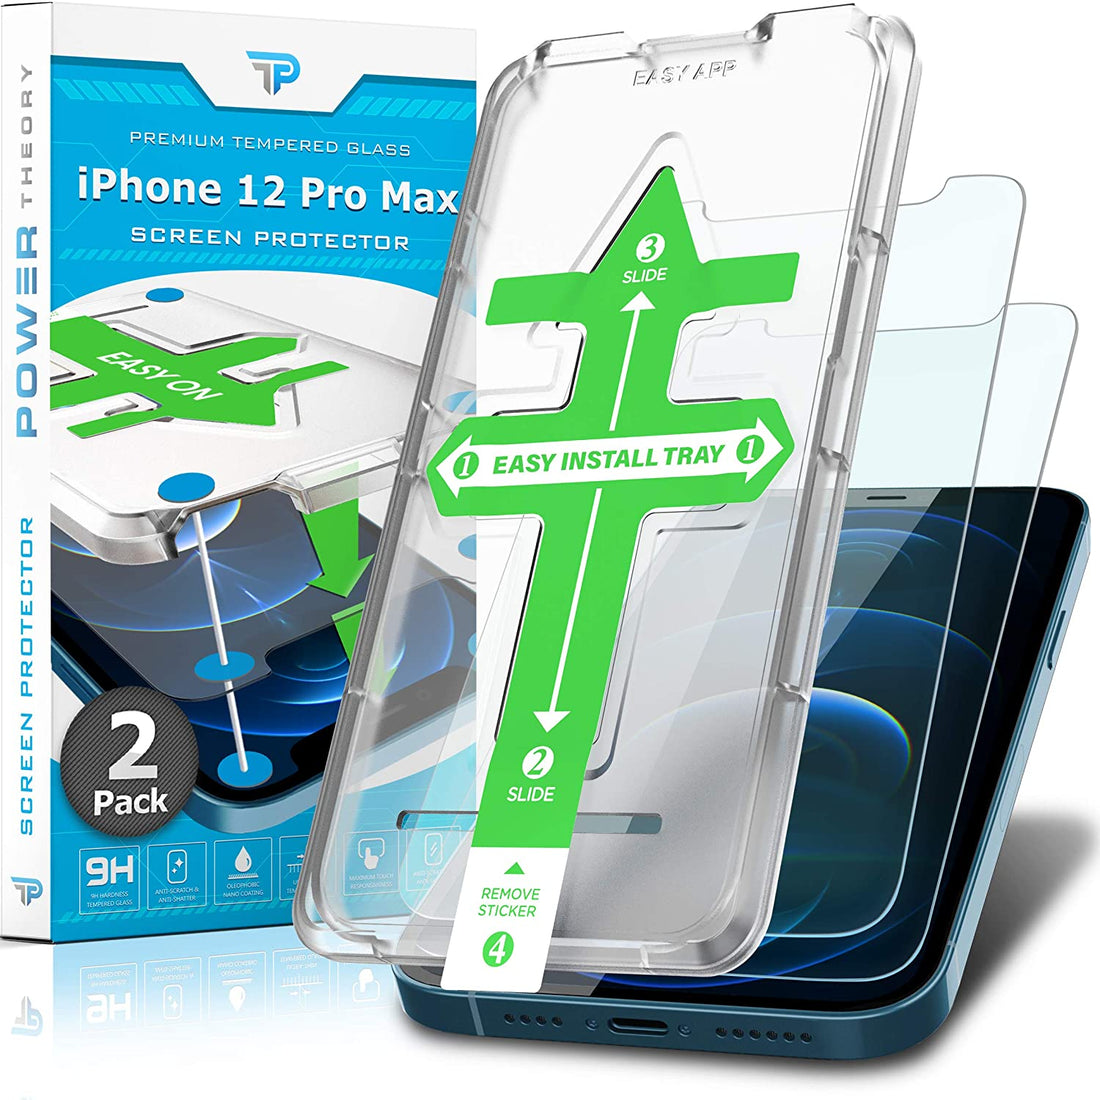 Power Theory Schutzfolie kompatibel mit iPhone 12 Pro Max [2 Stück] - mit Schablone, Glas Folie, Displayschutzfolie, Schutzglas Preview #1